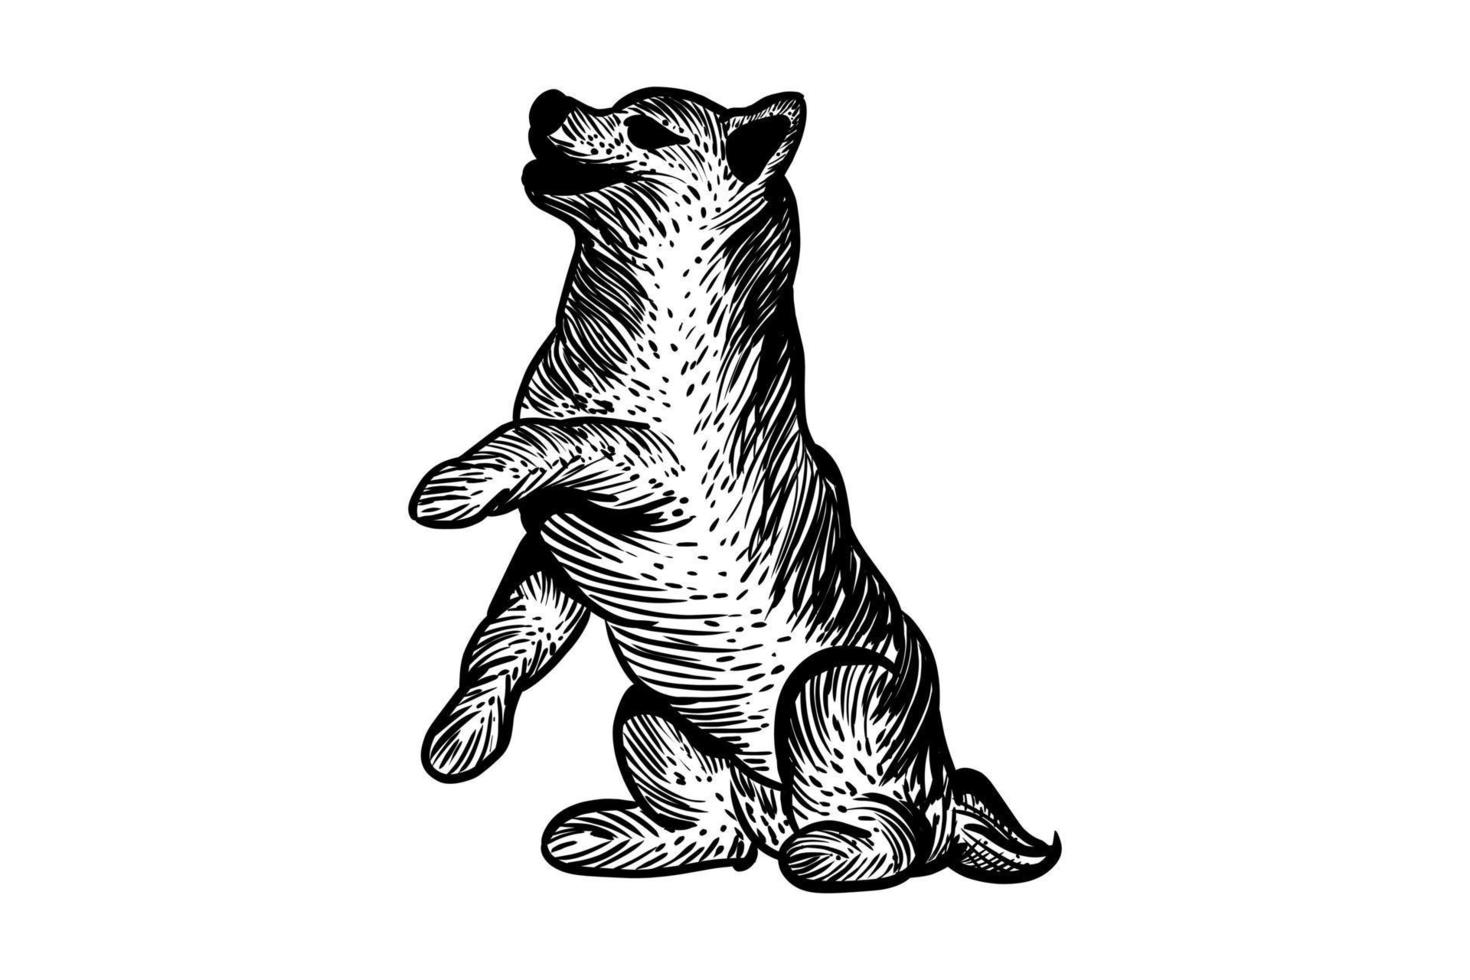 Vektor-Design Hund Hand in Farbe schwarz mit weißem Hintergrund gezeichnet vektor